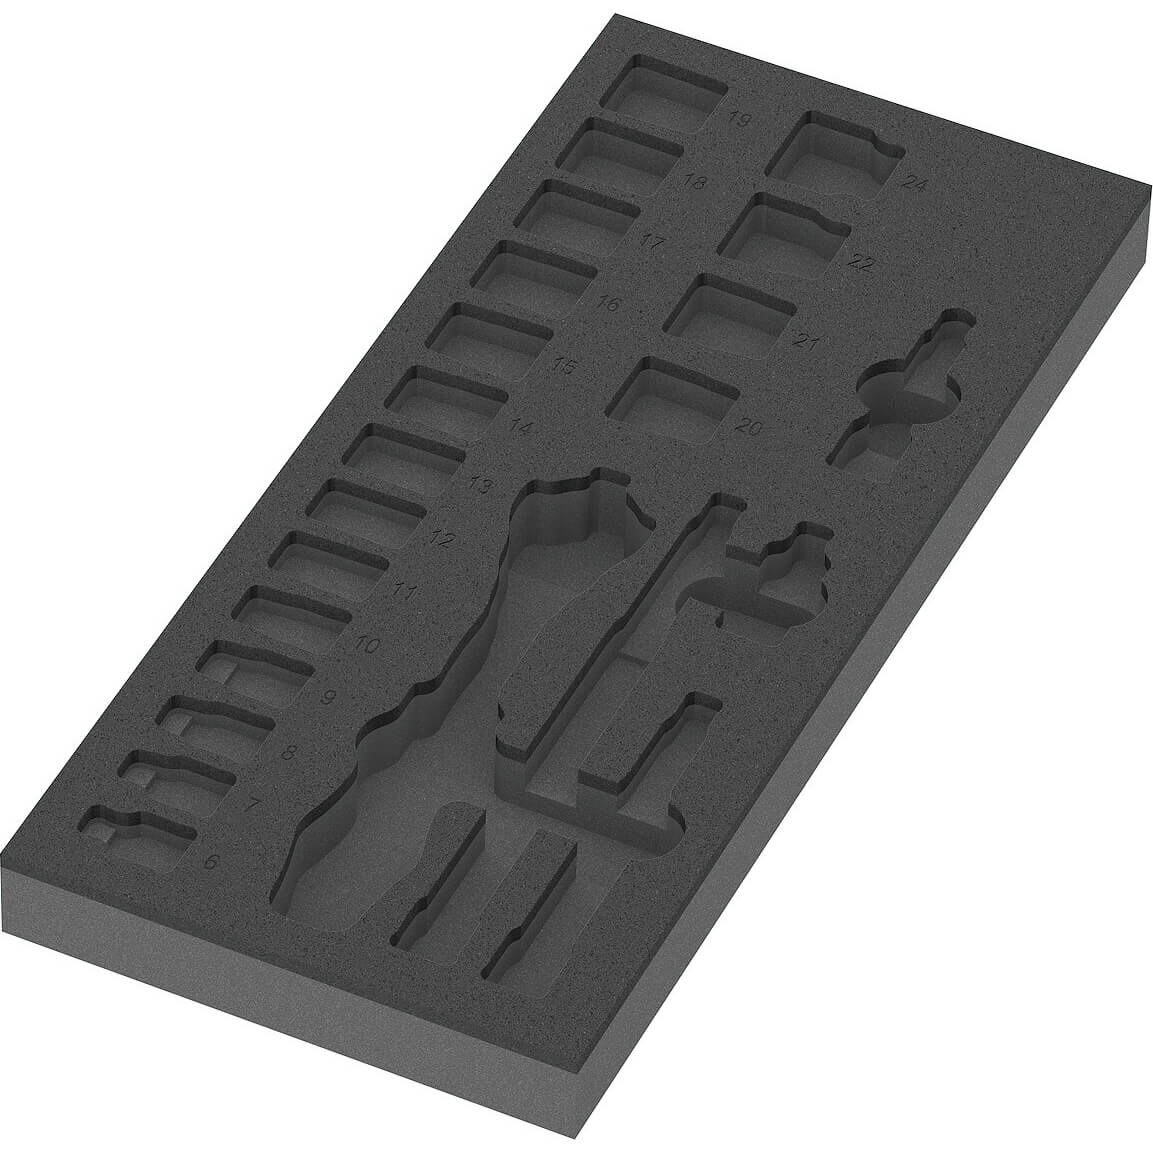 Image of Wera Empty Foam Insert Tray for 9721 3/8" Drive Socket Set